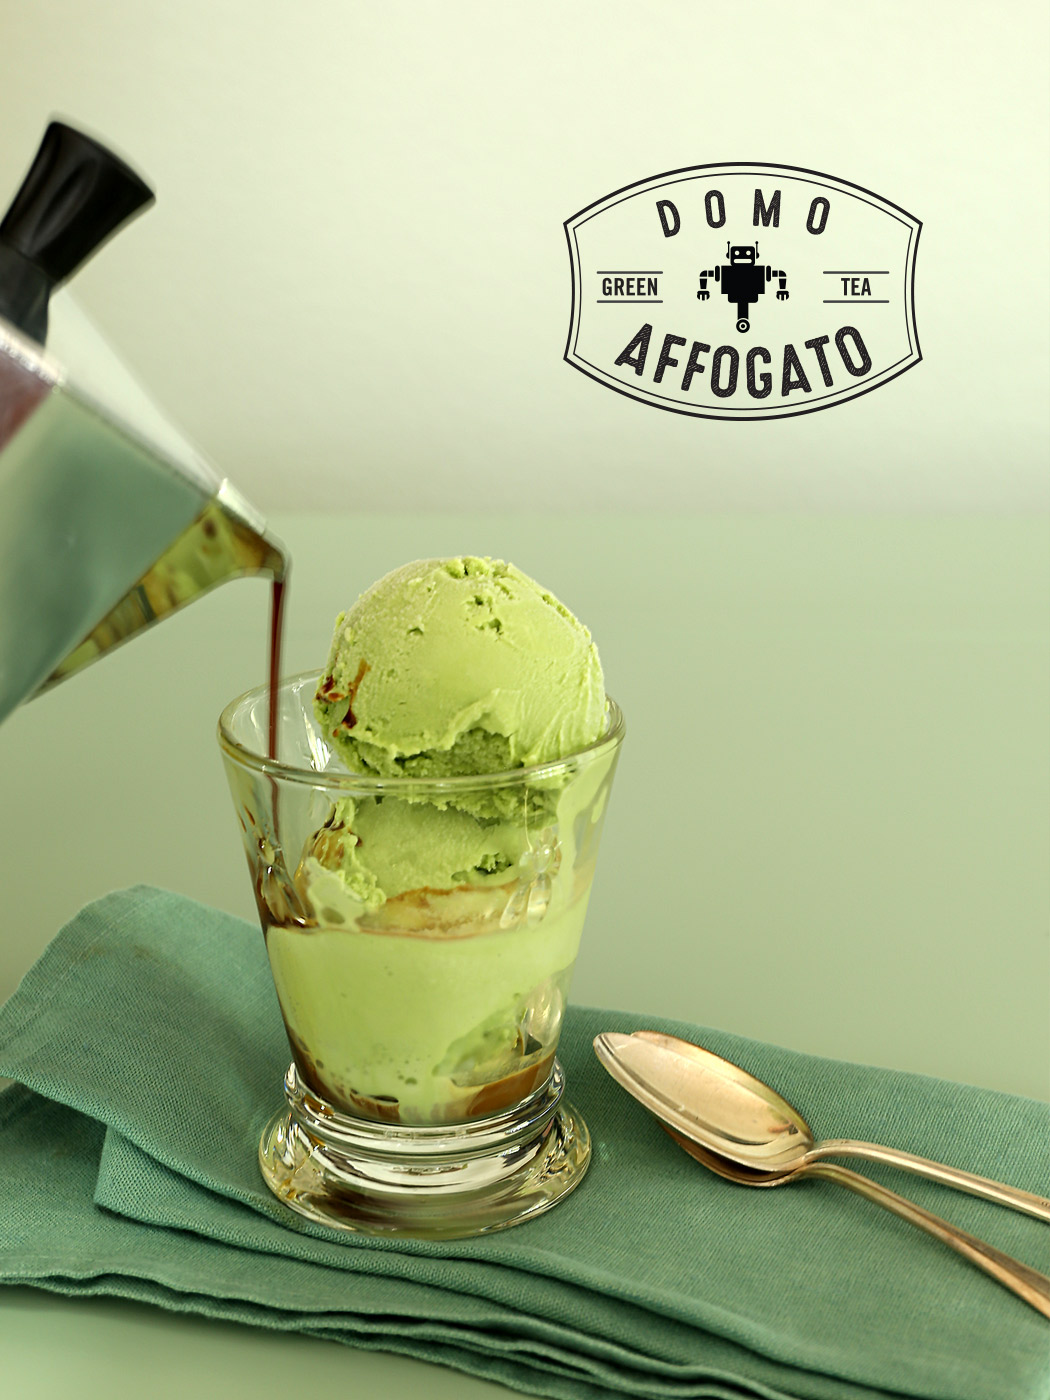 Domo Affogato - Green Tea Ice Cream Drowned in Espresso and Caramel